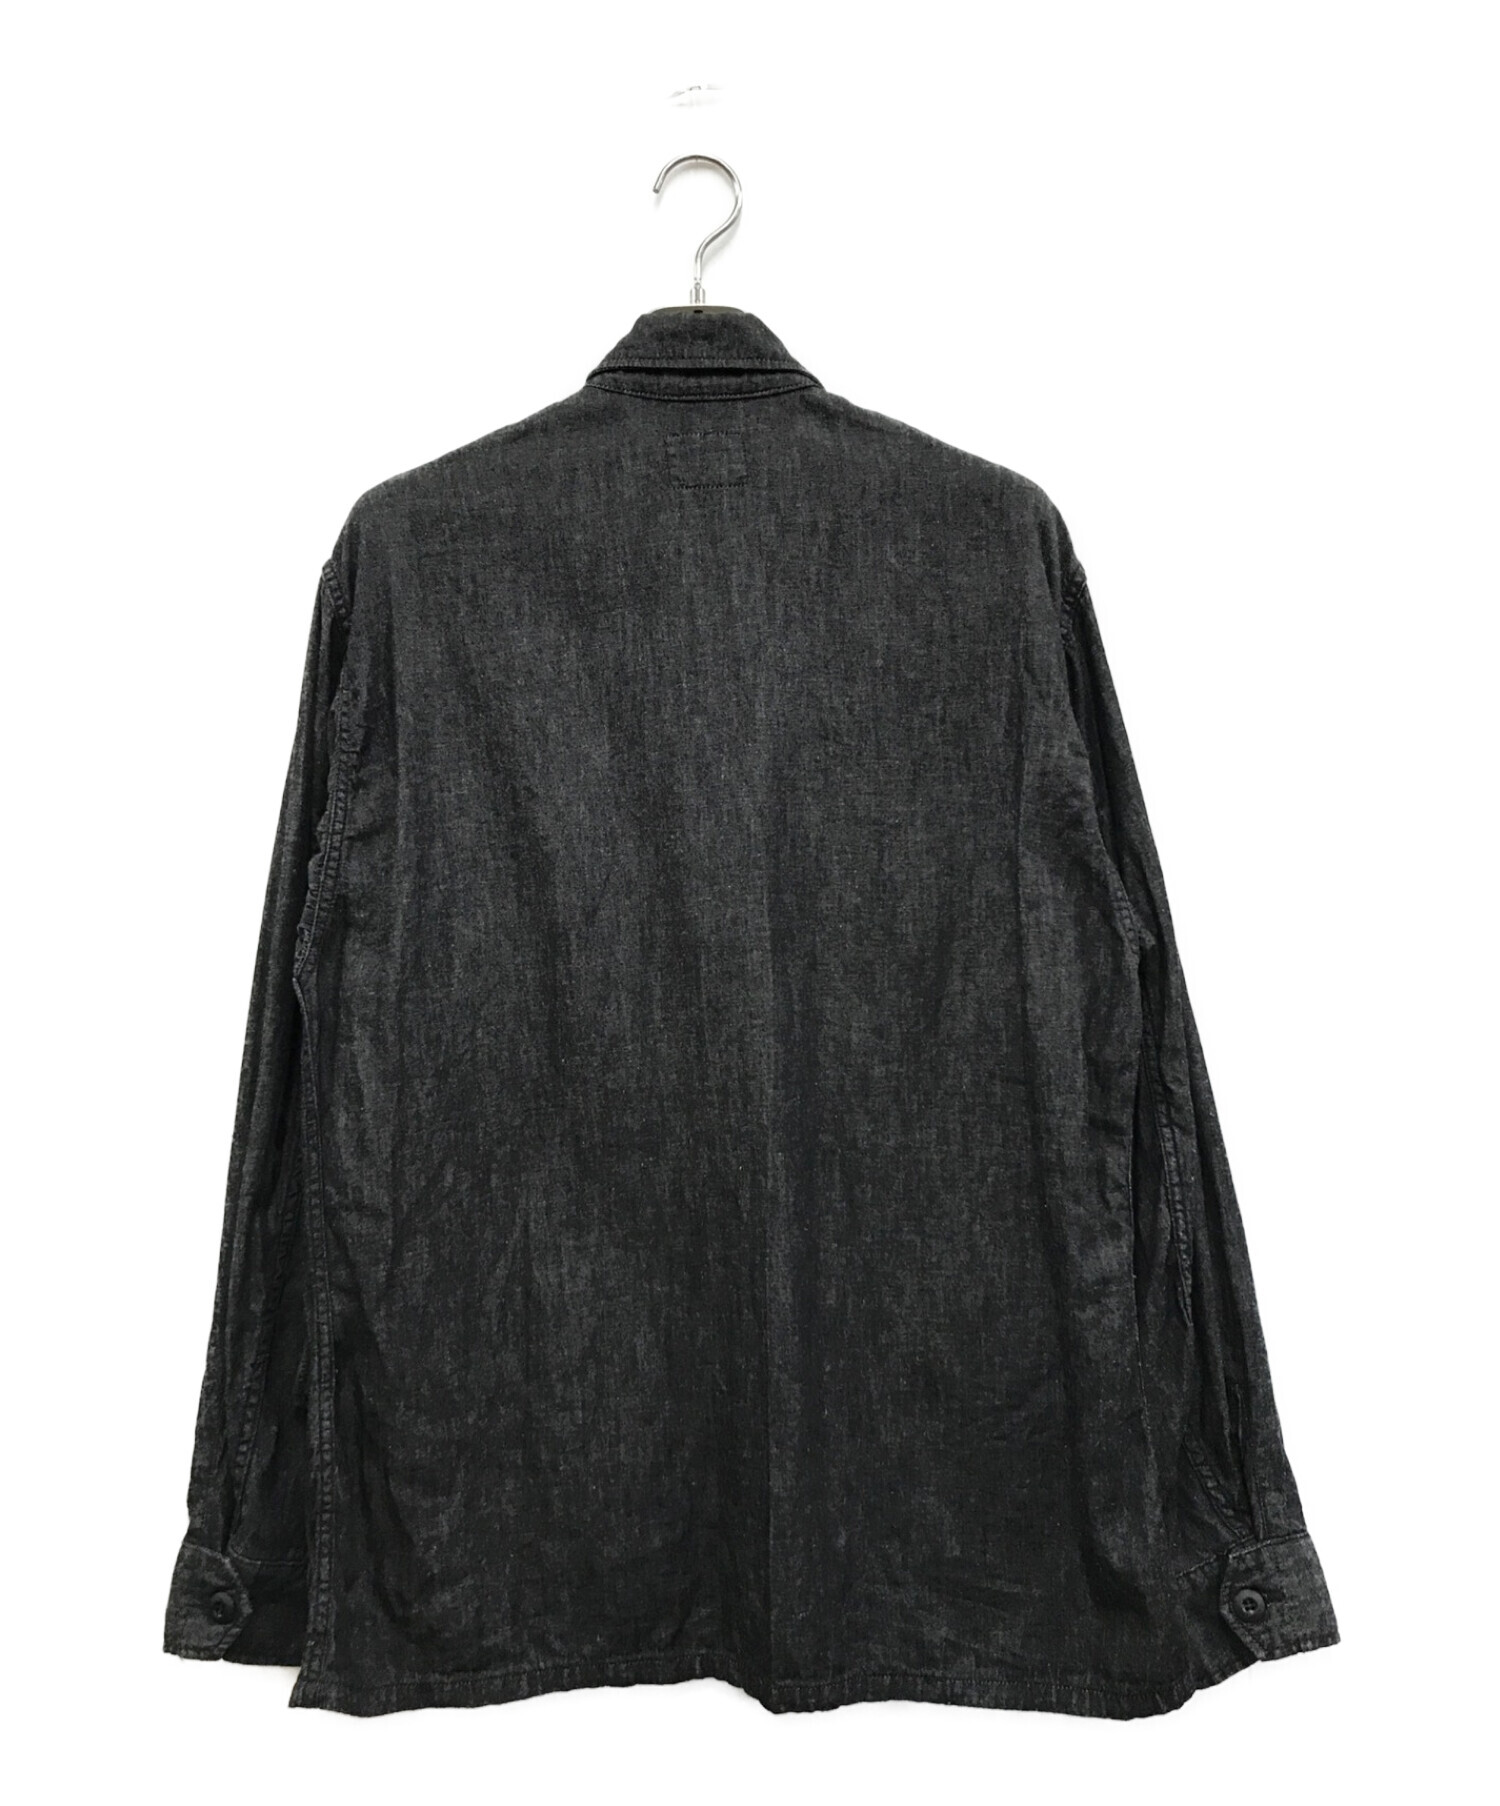 BONCOURA (ボンクラ) リネン混ジャングルファティーグジャケット ブラック サイズ:42